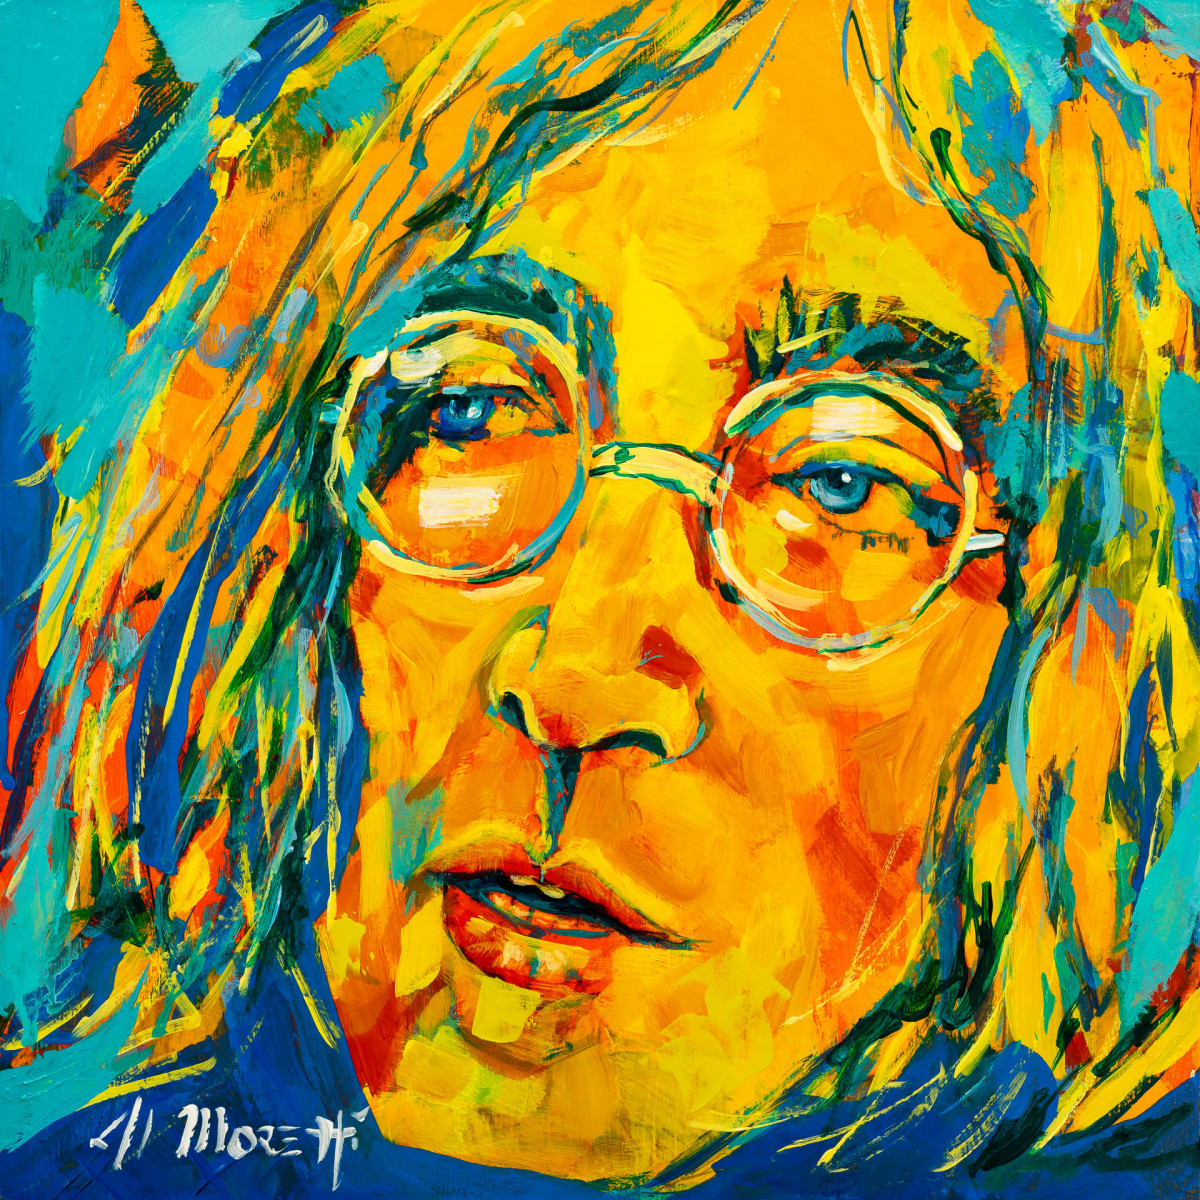 John Lennon, "Imagine" , No1 by Al Moretti 